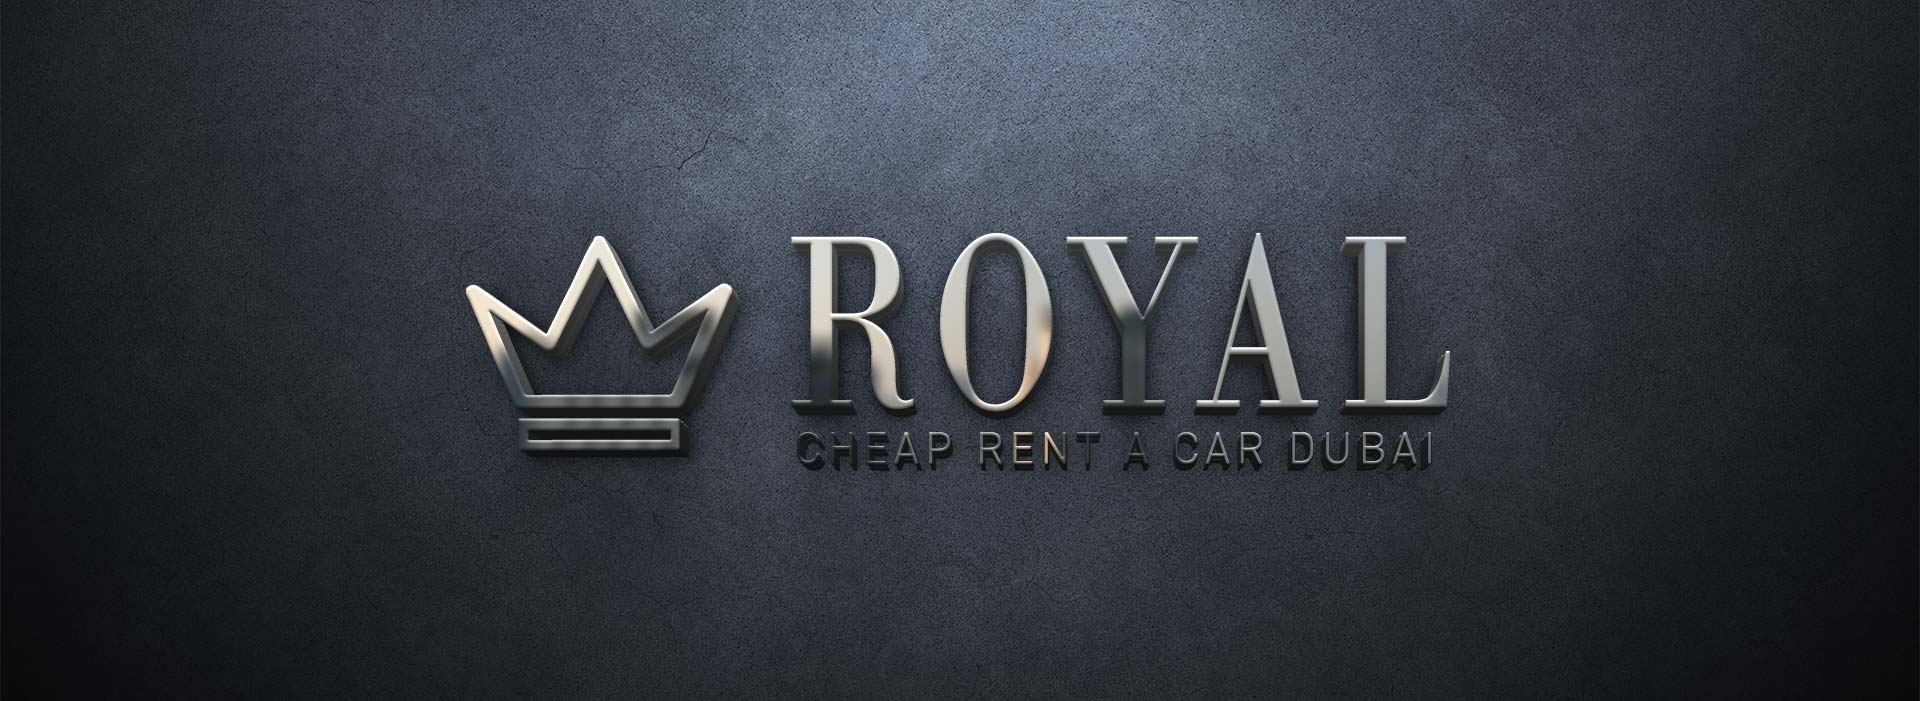 Cheap car rental in Dubai | About us